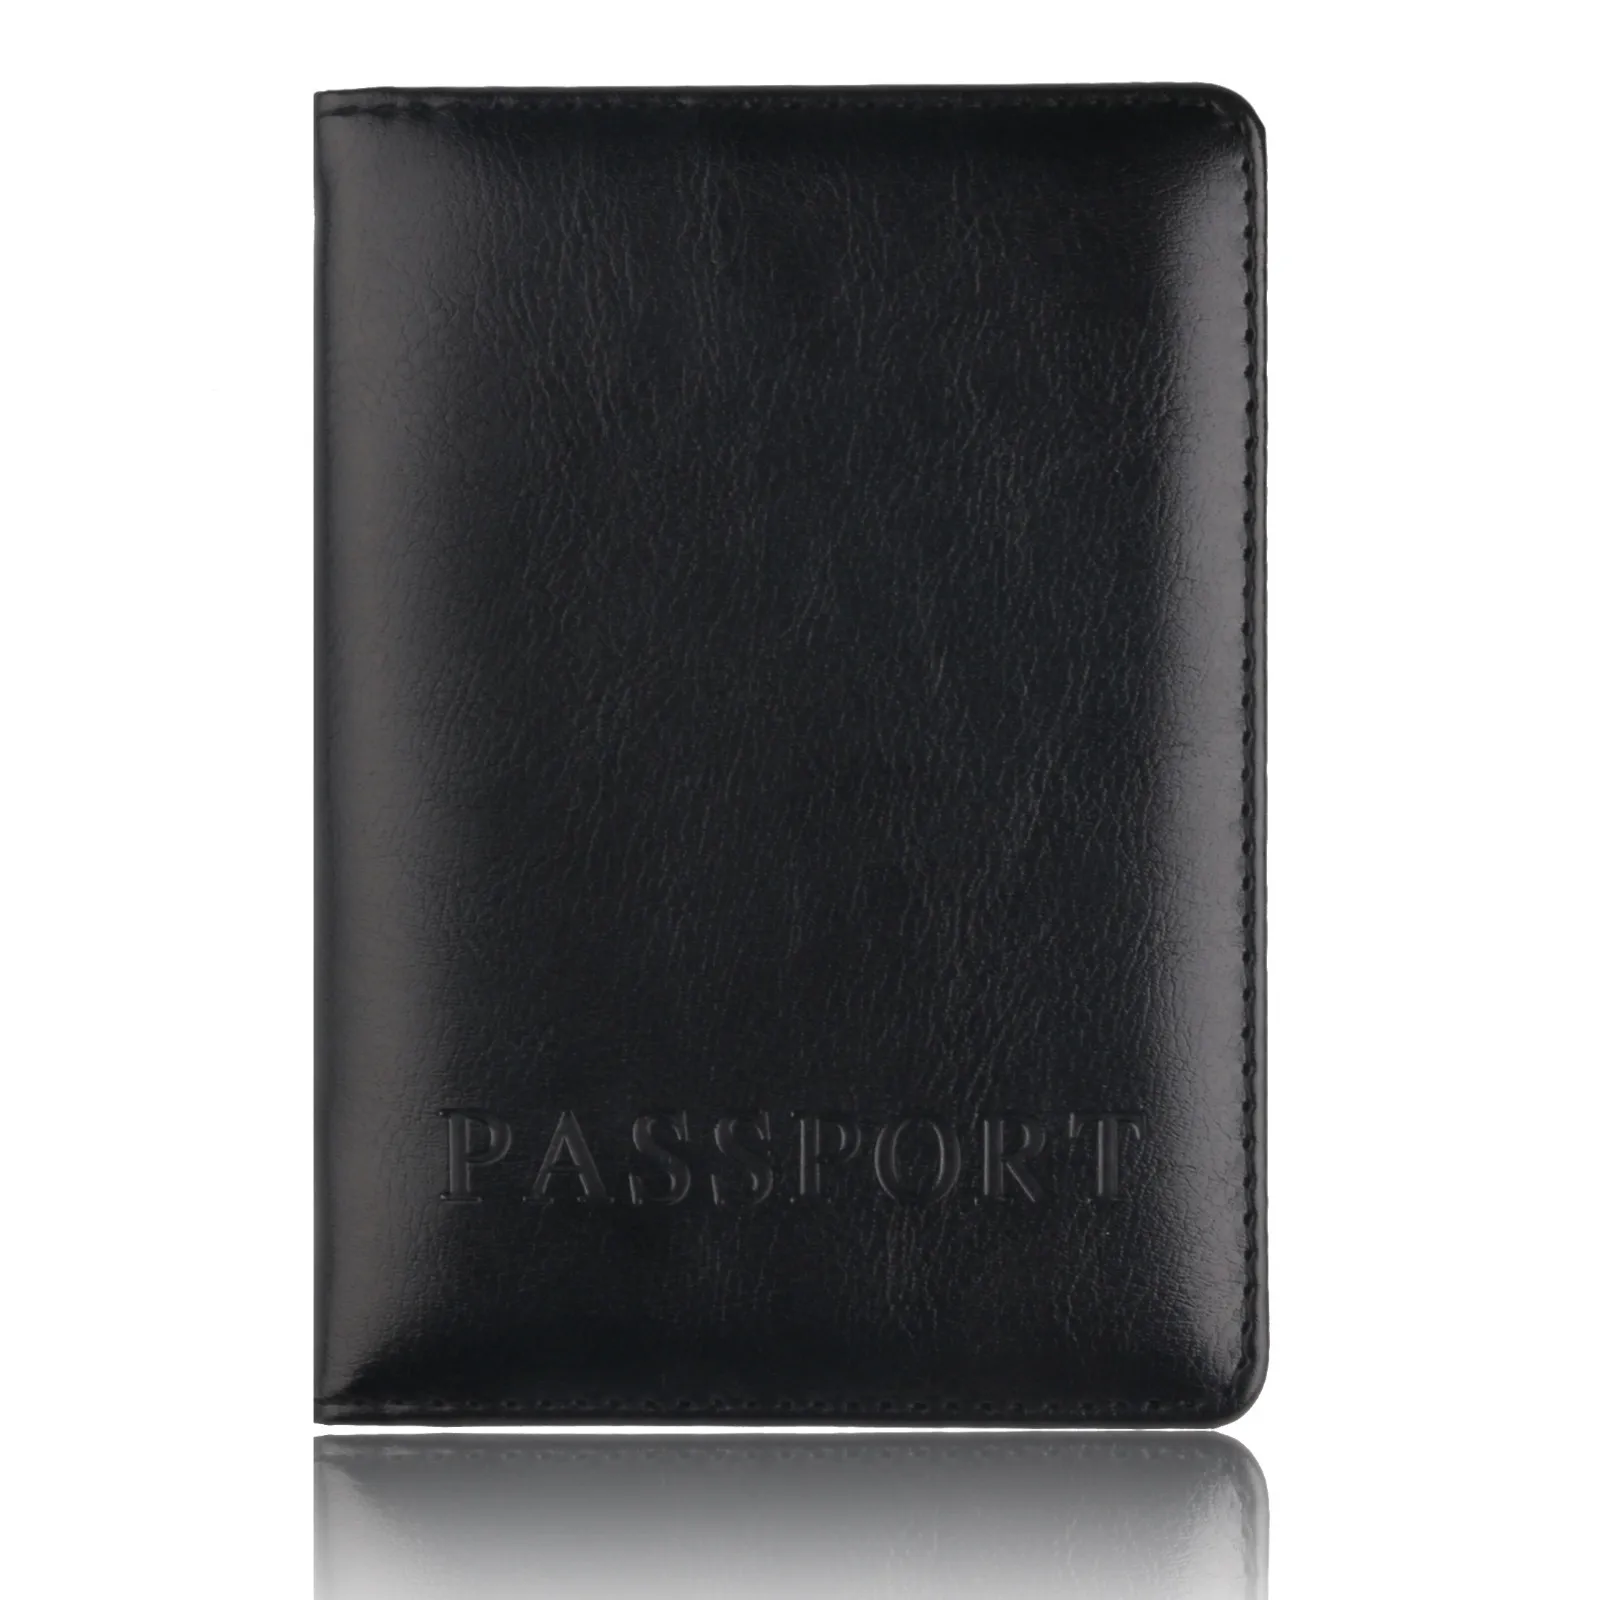 Защитный бумажник для паспорта для мужчин и женщин, Мягкая Обложка на паспорт для поездок, держатель для пакета#0